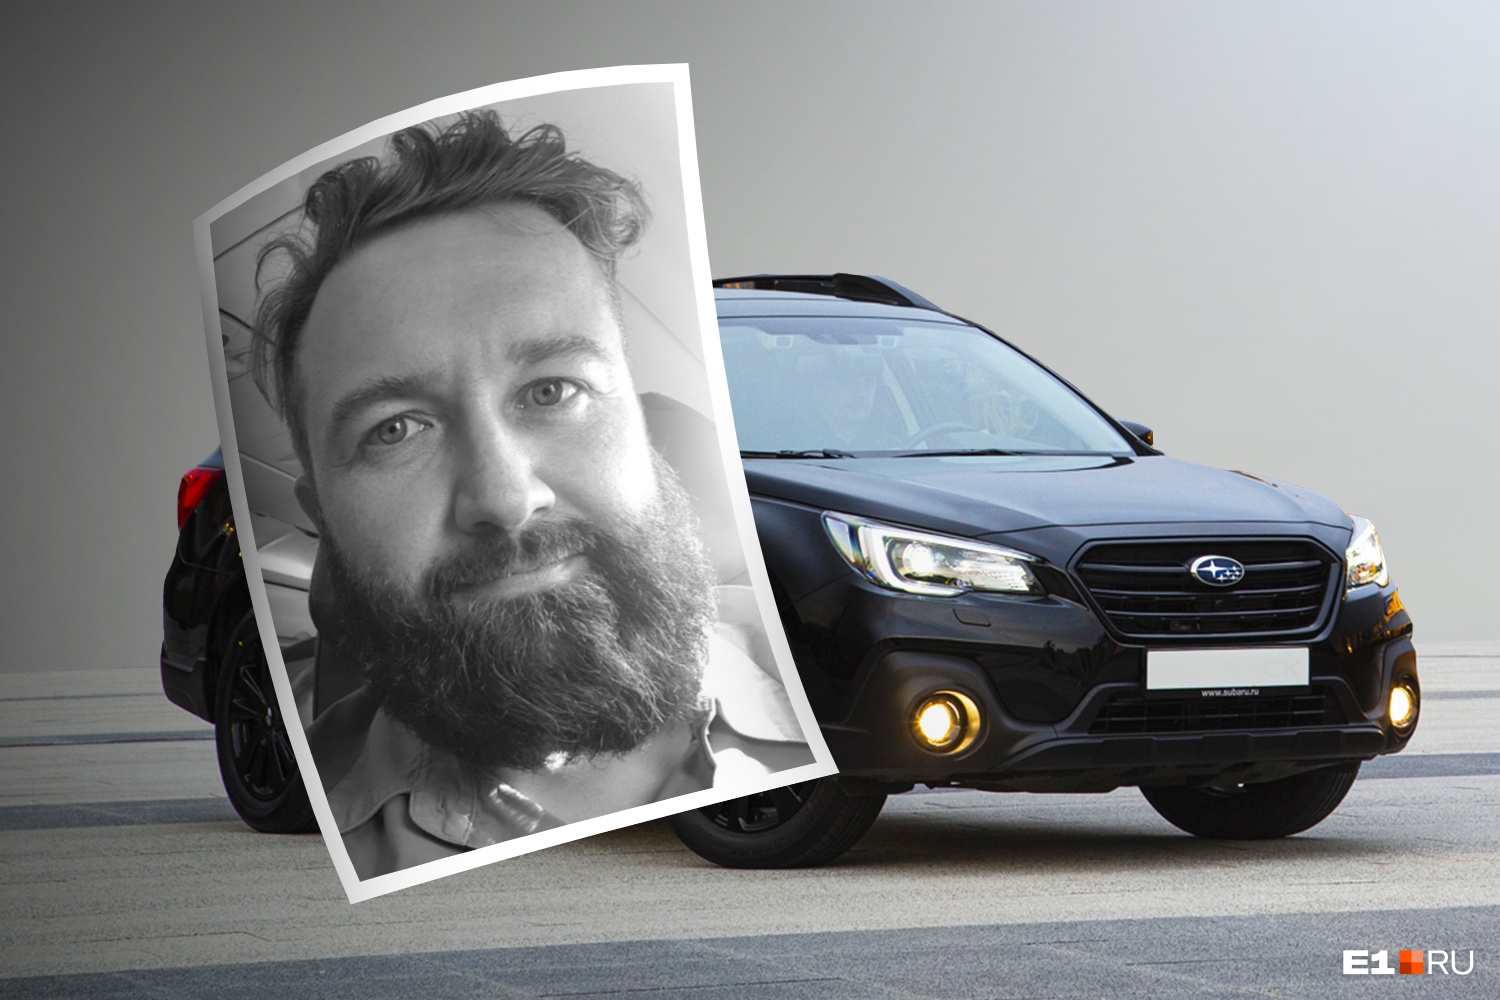 «Уснул в машине»: стали известны подробности гибели владельца дорогой Subaru в Екатеринбурге